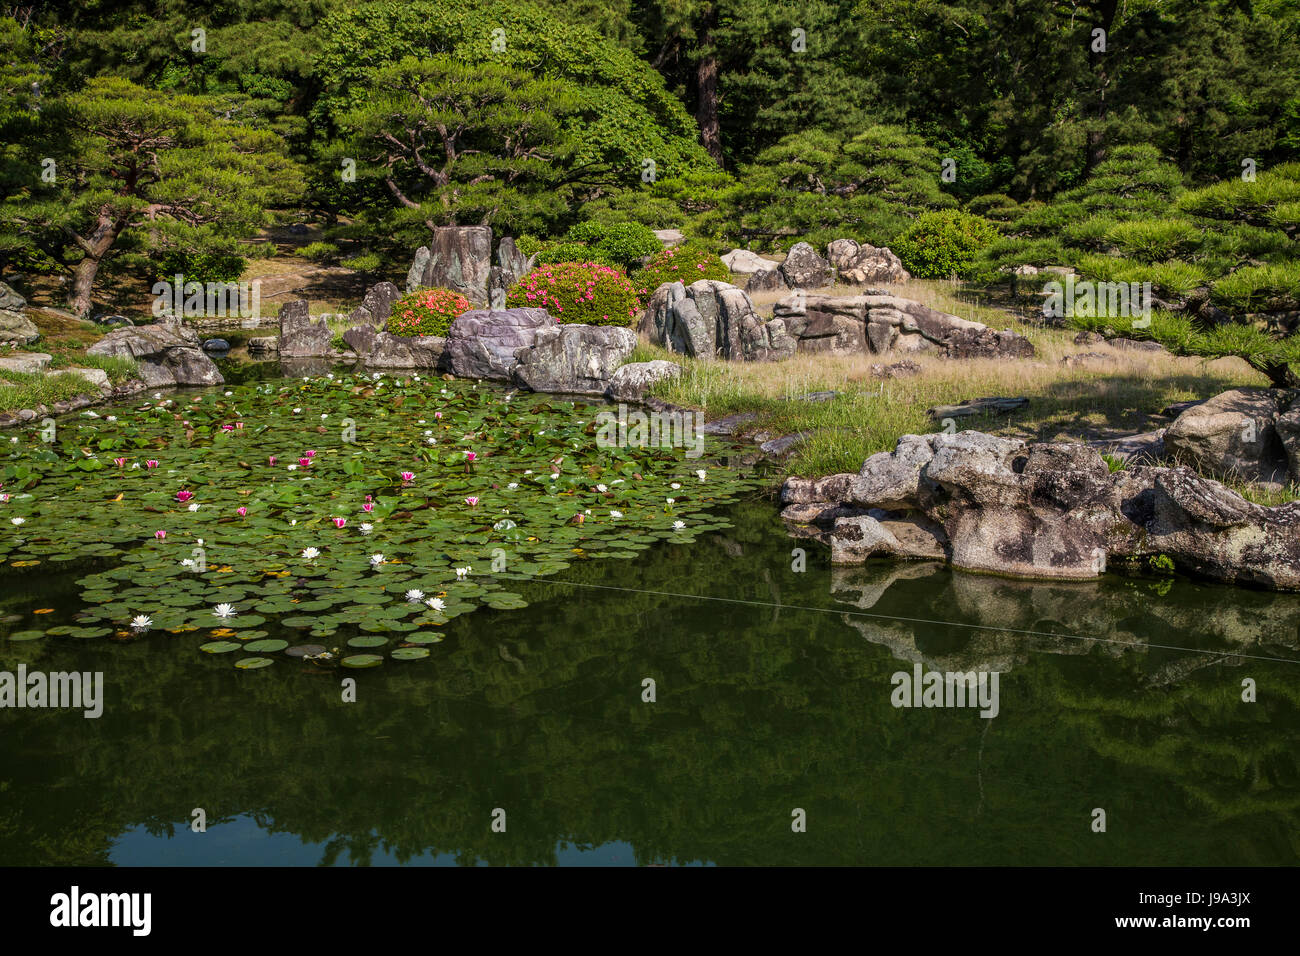 Ritsurin Ritsurin - Jardin Étang Jardin est un jardin paysager à Takamatsu construit par les seigneurs féodaux locaux durant la période Edo. Considéré comme l'un des th Banque D'Images